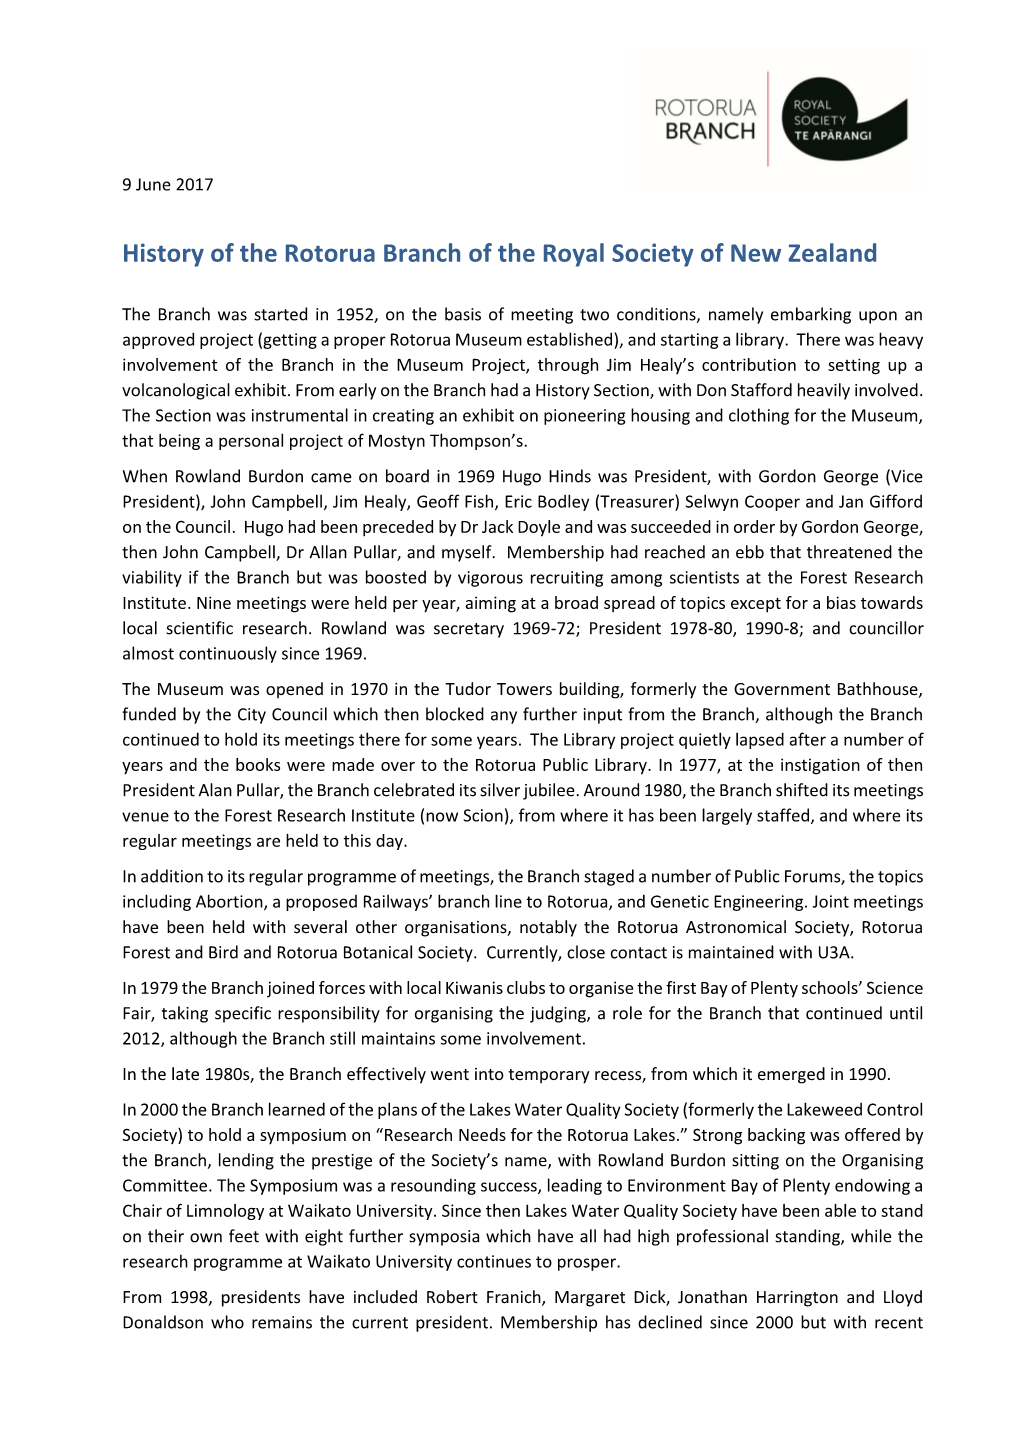 History of the Rotorua Branch of the Royal Society of New Zealand